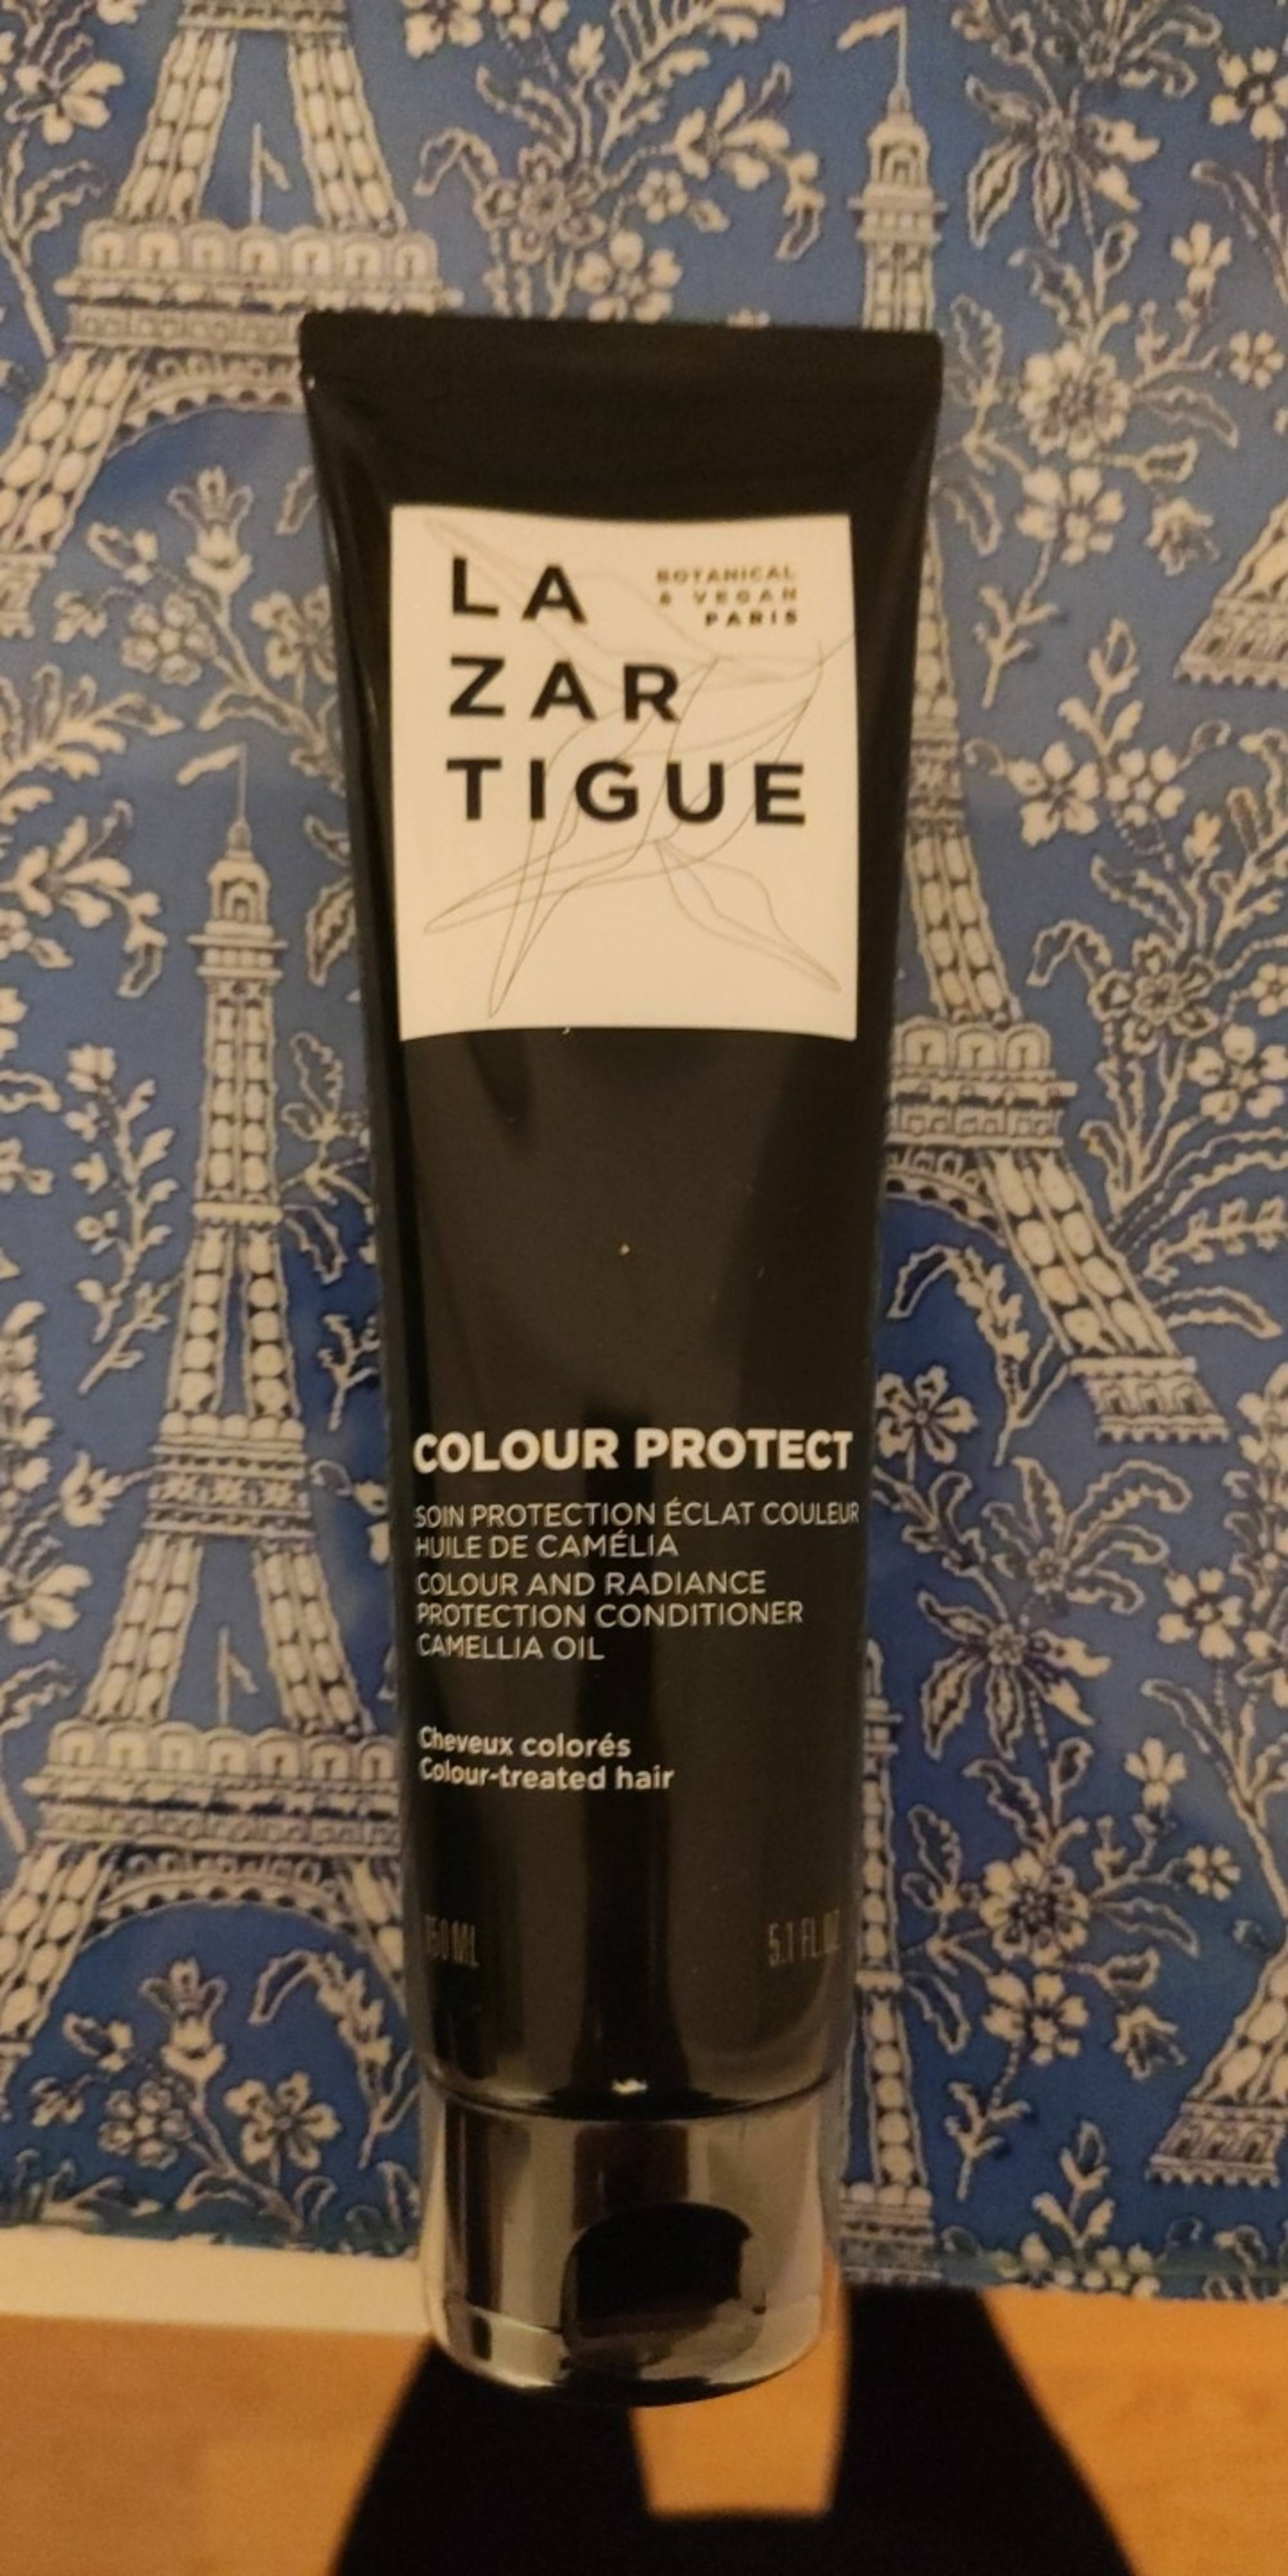 LAZARTIGUE - Colour protect - Soin protection éclat couleur 